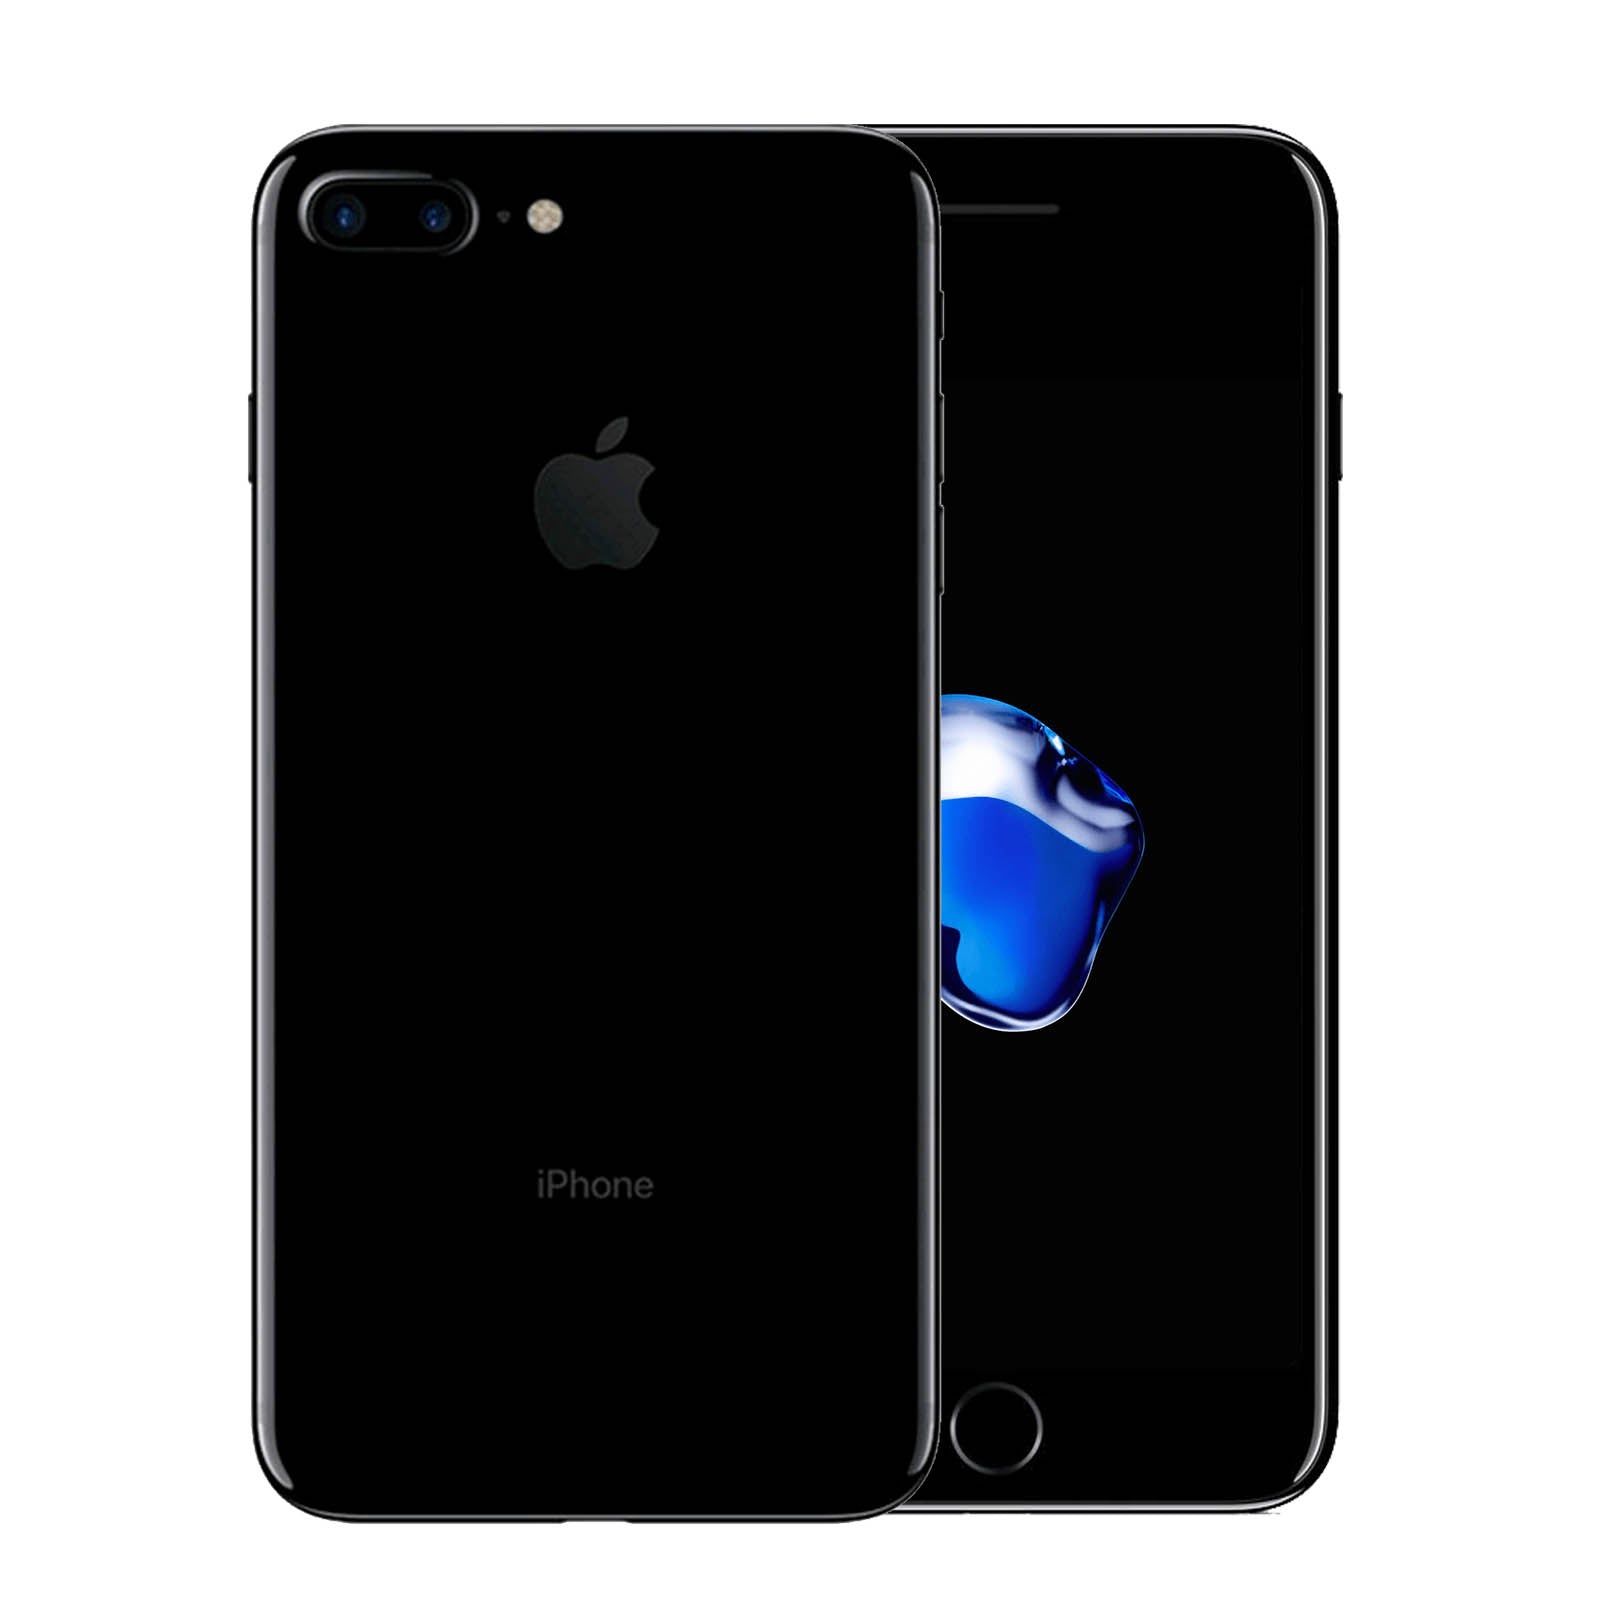 Apple iPhone 7 Plus 128GB Jet Black Good - Unlocked